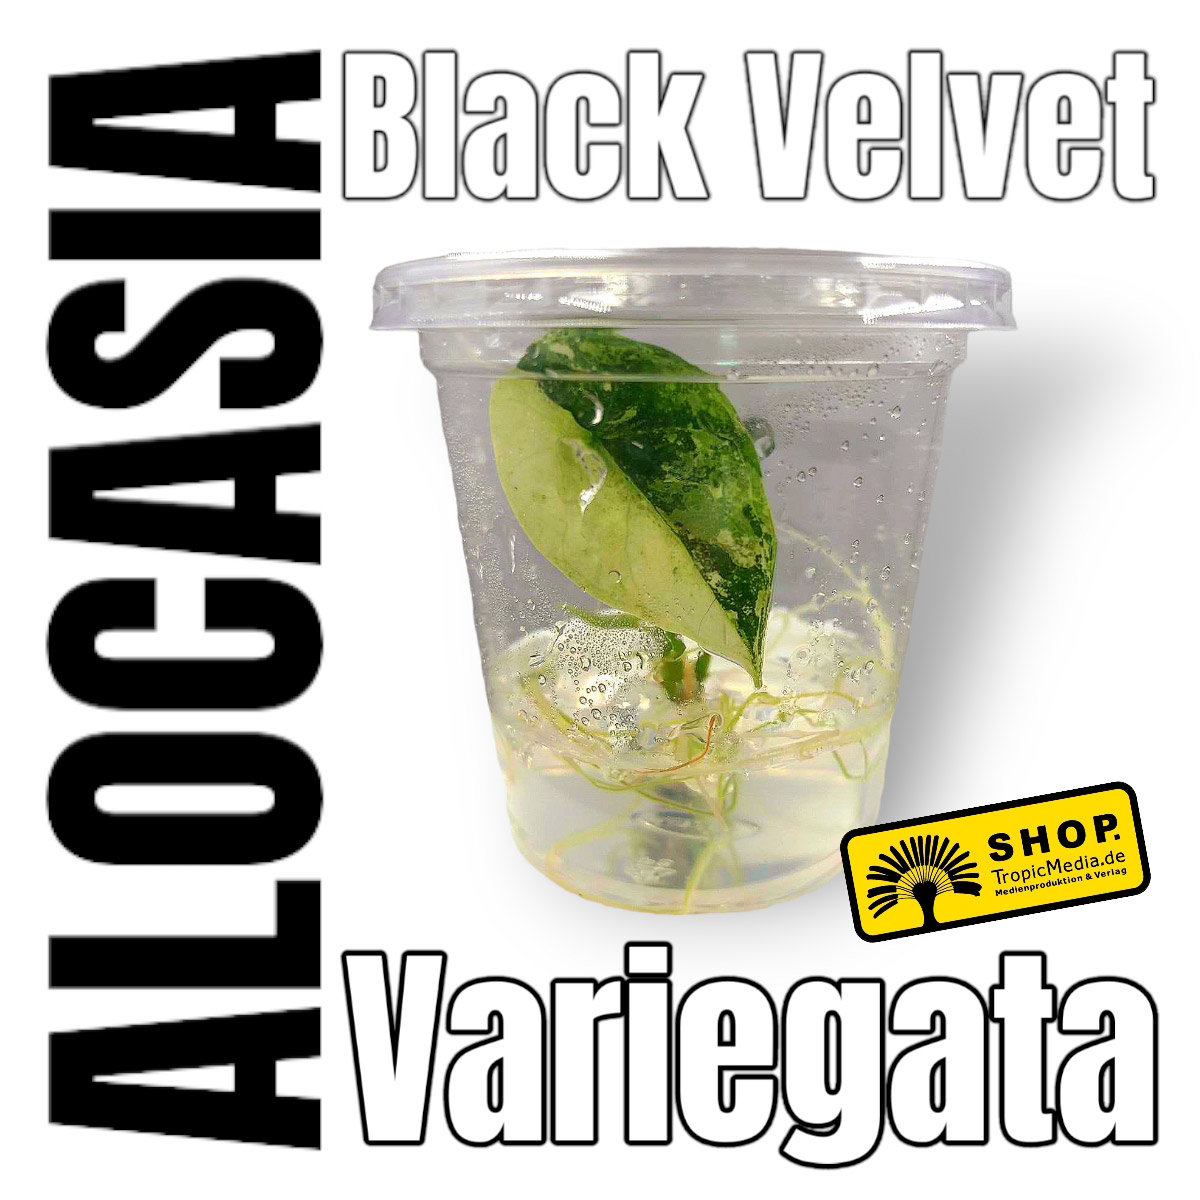 Alocasia Black Velvet 100% Variegata Tissue Culture (TC)